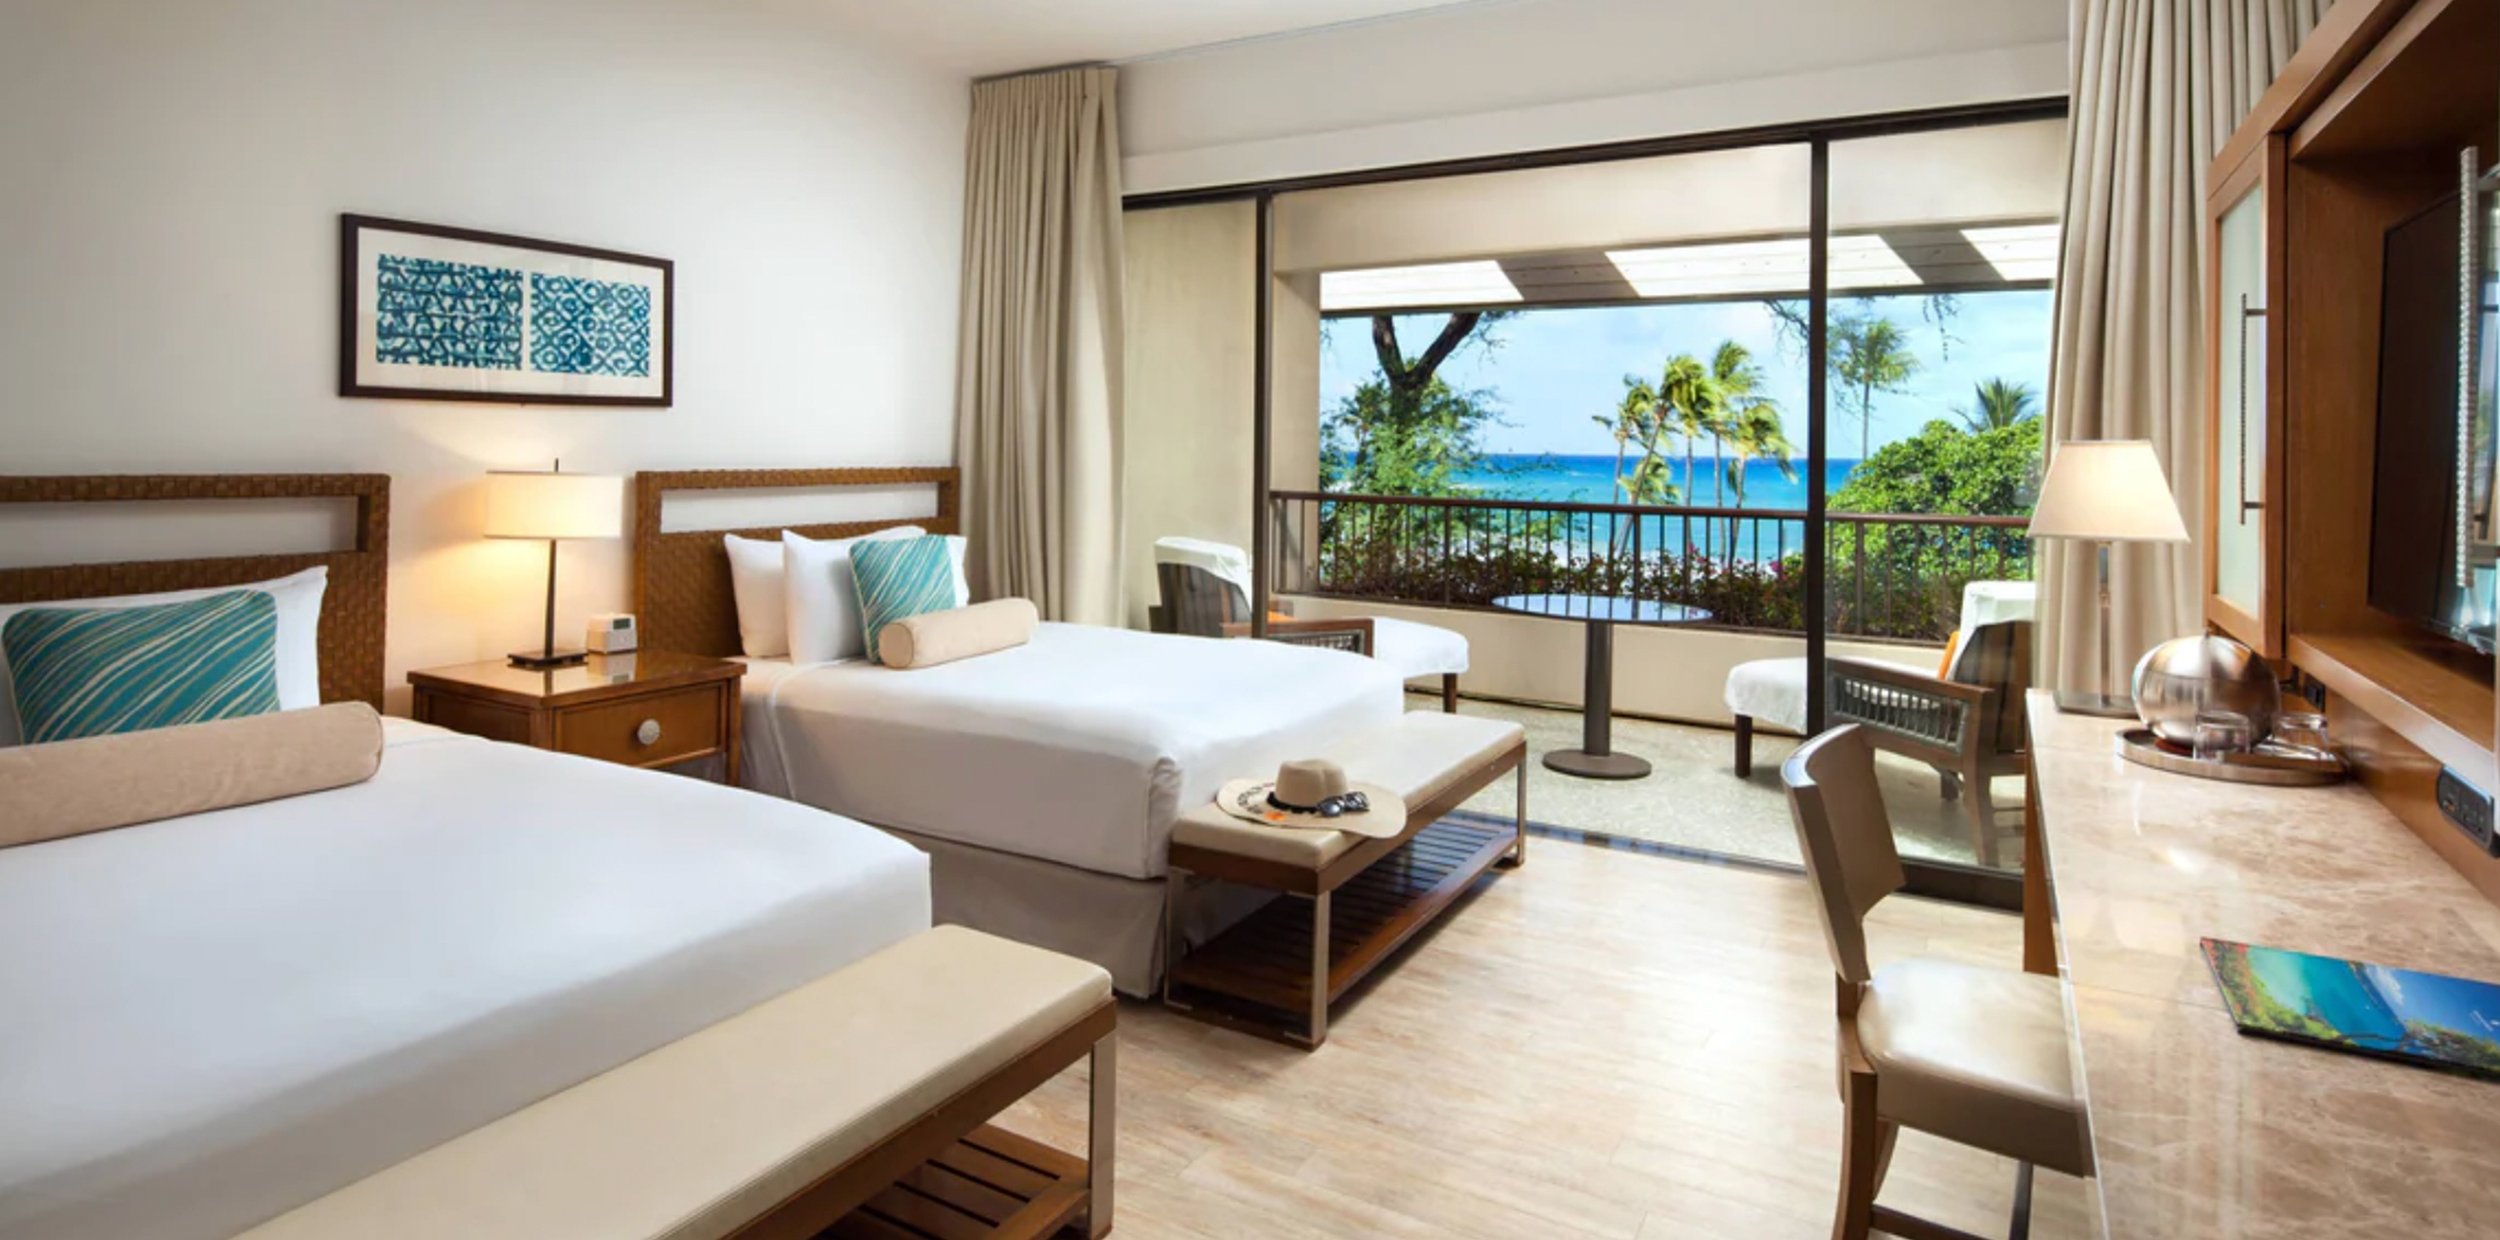 Mauna-Kea-Beach-Hotel-16.jpg